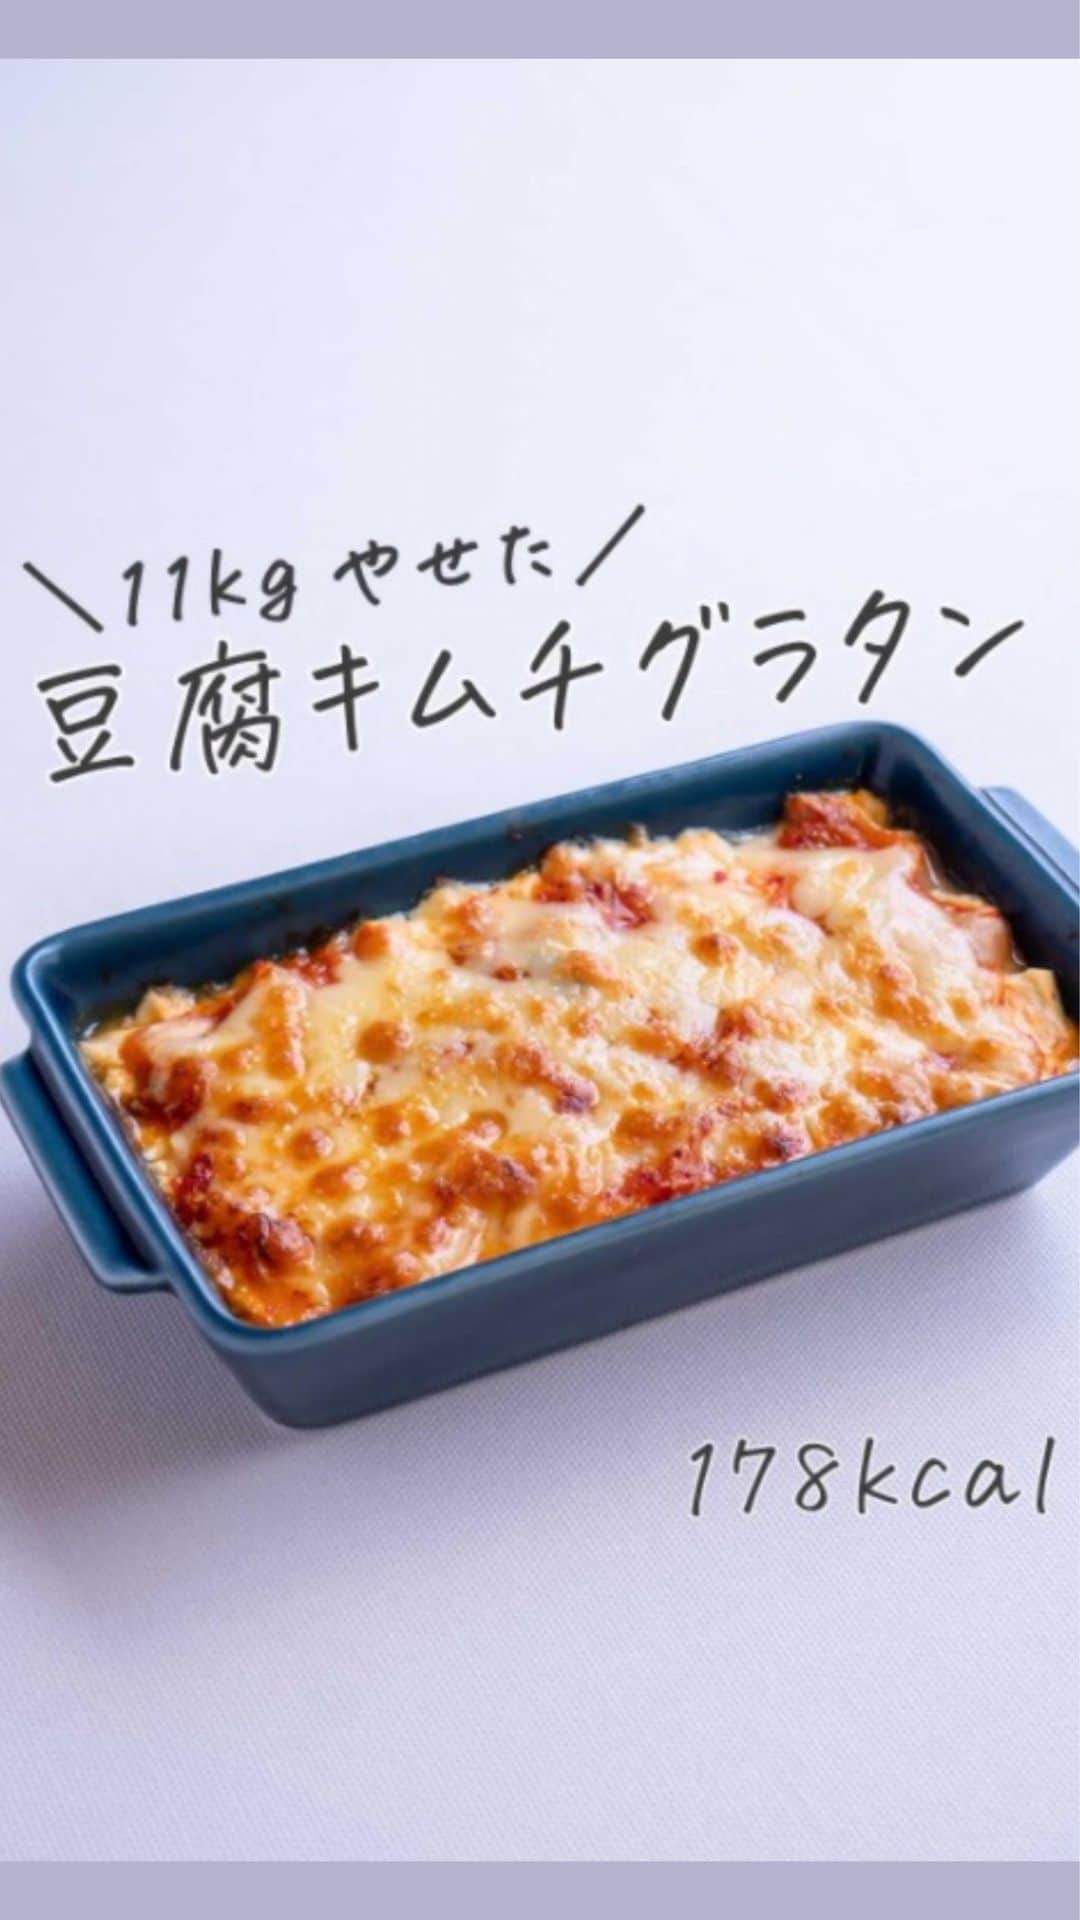 ヤセレポのインスタグラム：「今回は、 @subaru_kitchen さんの、低カロリーなのに、豆腐／キムチ／チーズの相性がバツグンでめちゃウマ豆腐キムチグラタンをご紹介✨  ■レシピ（１人分） 1.耐熱皿に豆腐150gと鶏ガラスープのもと小さじ1/2、ごま油小さじ1/2を入れてまぜる  2.豆腐のうえにキムチ50gをのせる  3.さらにそのうえにピザ用チーズ大さじ２をのせる  4.オーブントースターかレンジでチーズが溶けるまで加熱する 　※オーブントースタのほうがチーズに焦げ目がついておいしいです  ヘルシーさ　★★★ 作りやすさ　★★★ 食べ応え 　 ★★★  疲れていても作れる簡単レシピを紹介している @subaru_kitchen さんの投稿はどれも参考になる投稿ばかり！ ぜひ参考にしてみてくださいね🌈  #ダイエットのモチベーション #美容 #健康 #ダイエット知識 #食べて痩せる #痩せたい #痩せたい人と繋がりたい #インスタダイエット仲間募集 #ダイエット仲間 #ダイエット効果 #痩せる #ダイエットメニュー #ダイエットアカウント #ダイエット部 #ダイエット女子 #ダイエット女子と繋がりたい #イートピ #eatopic」